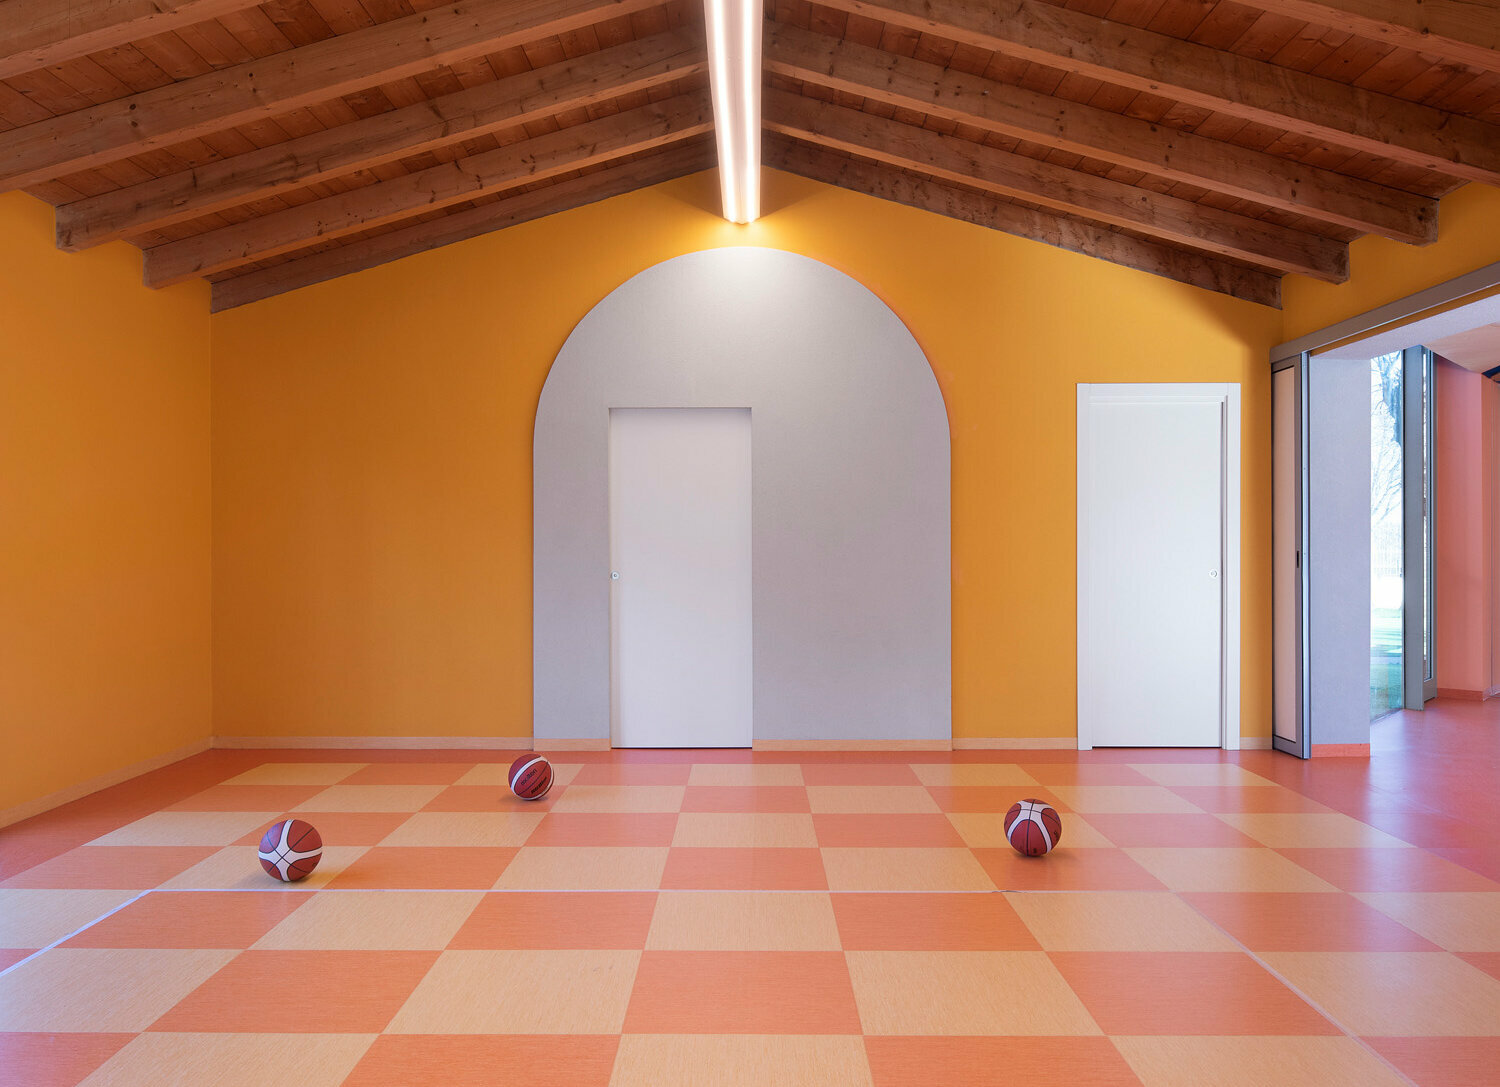 Una sala ampia per praticare sport, realizzata su toni arancioni. Sul pavimento sono presenti tre palle da basket.